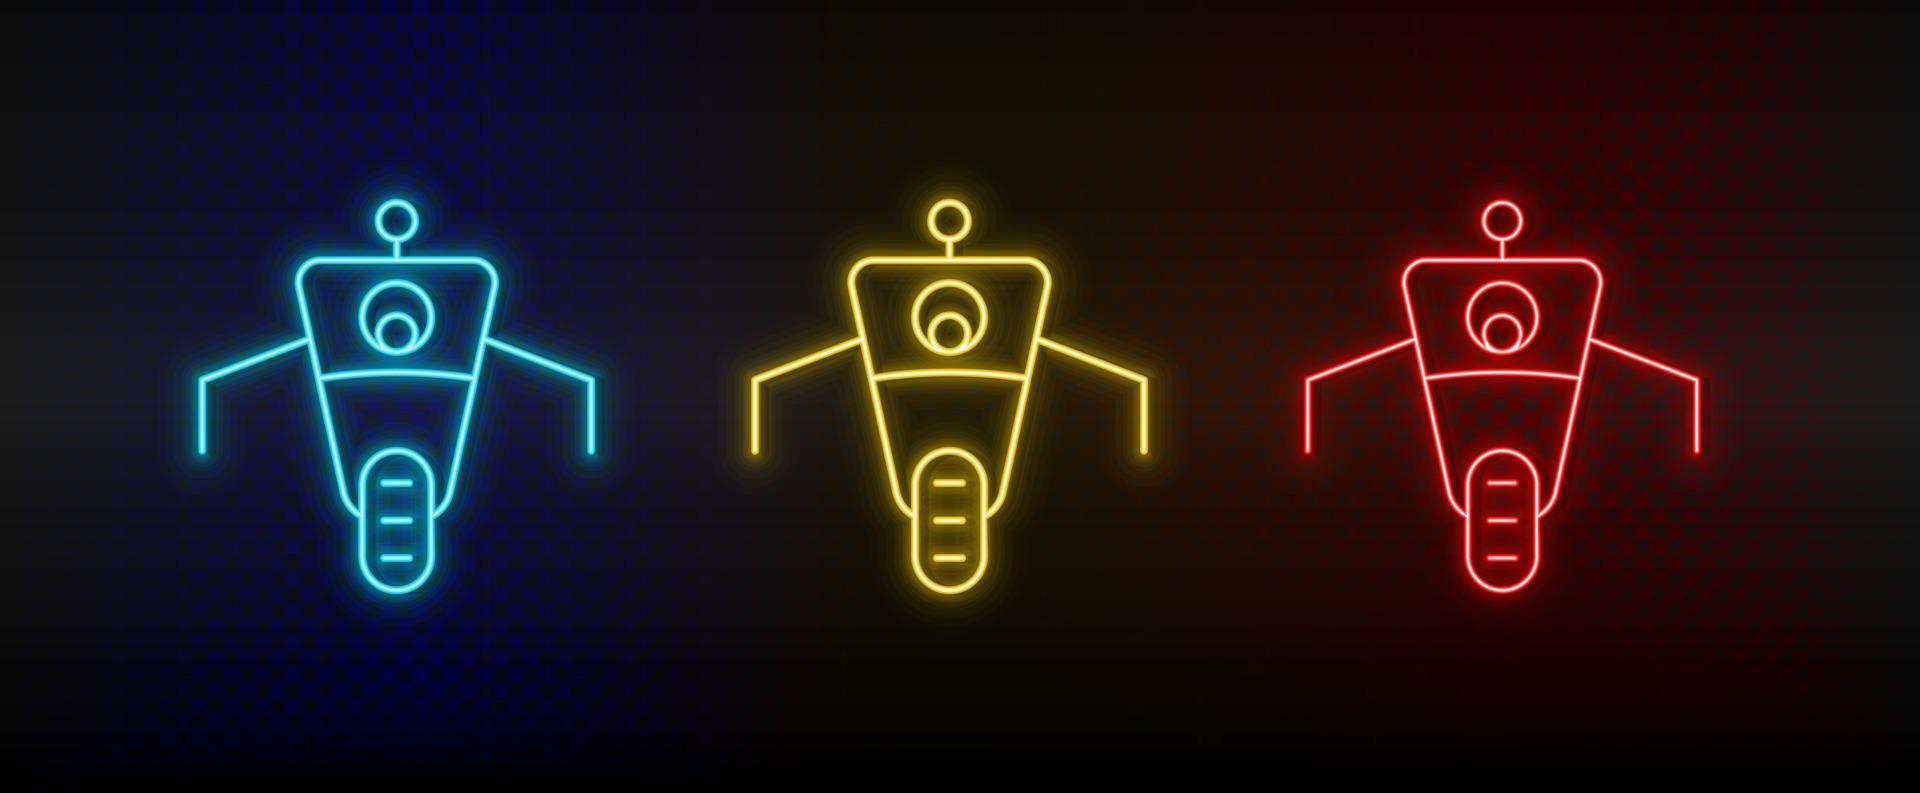 Neon-Symbole. Roboterauto. Satz von roten, blauen, gelben Neonvektorsymbolen auf dunklem Hintergrund vektor